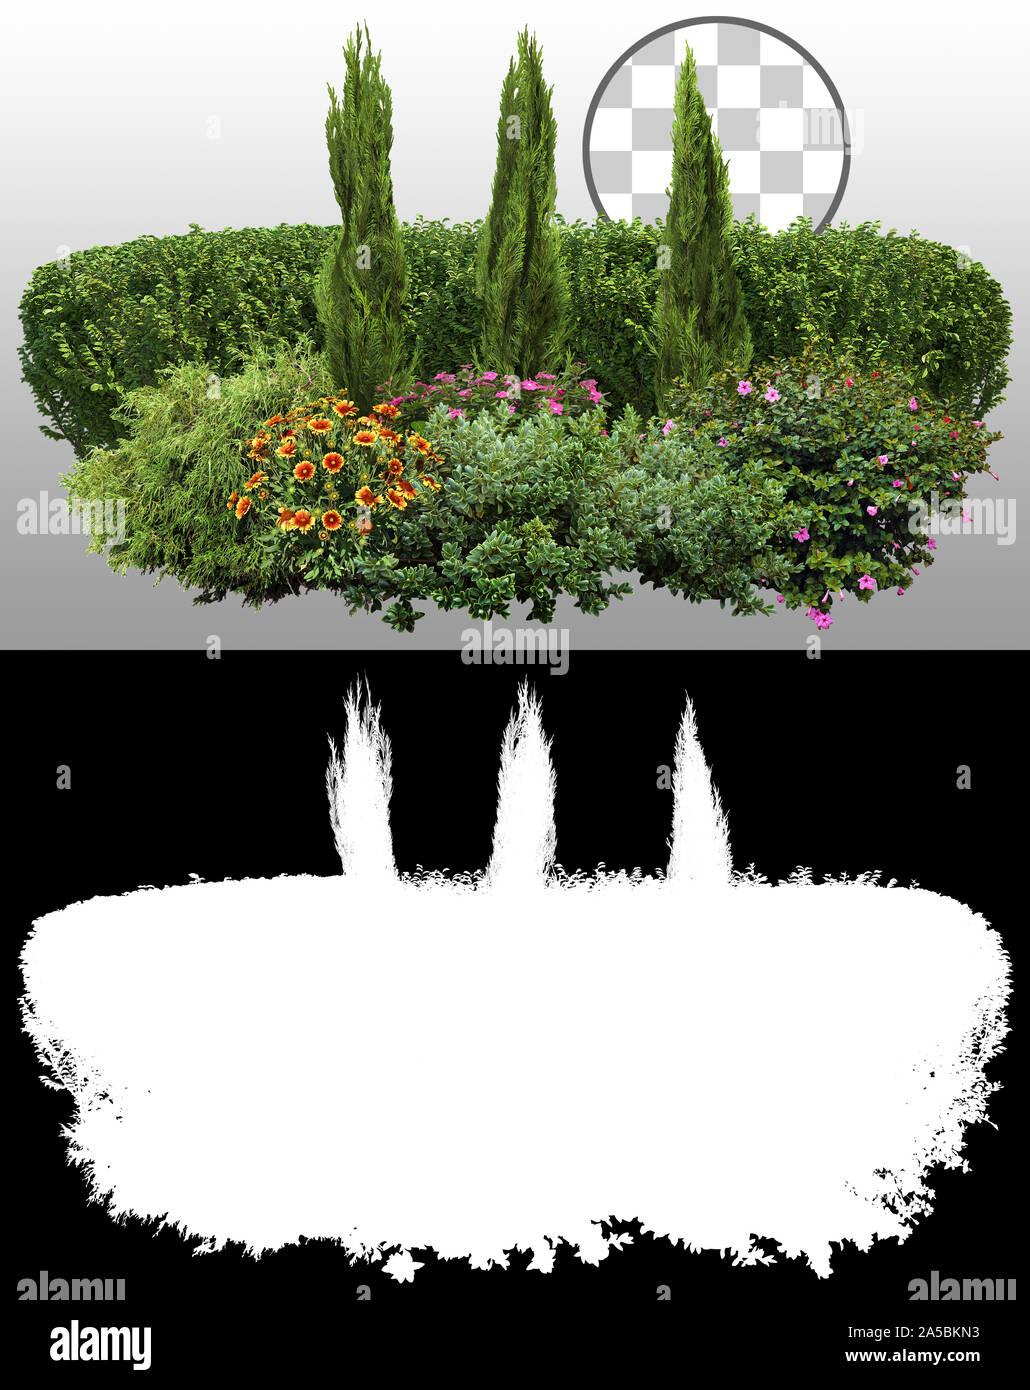 Ausgeschnittene grüne Hecke und Blumenbeet. Gartendesign isoliert auf transparentem Hintergrund über einen Alphakanal. Blühender Strauch und Pflanzen für den Landschaftsbau. Stockfoto